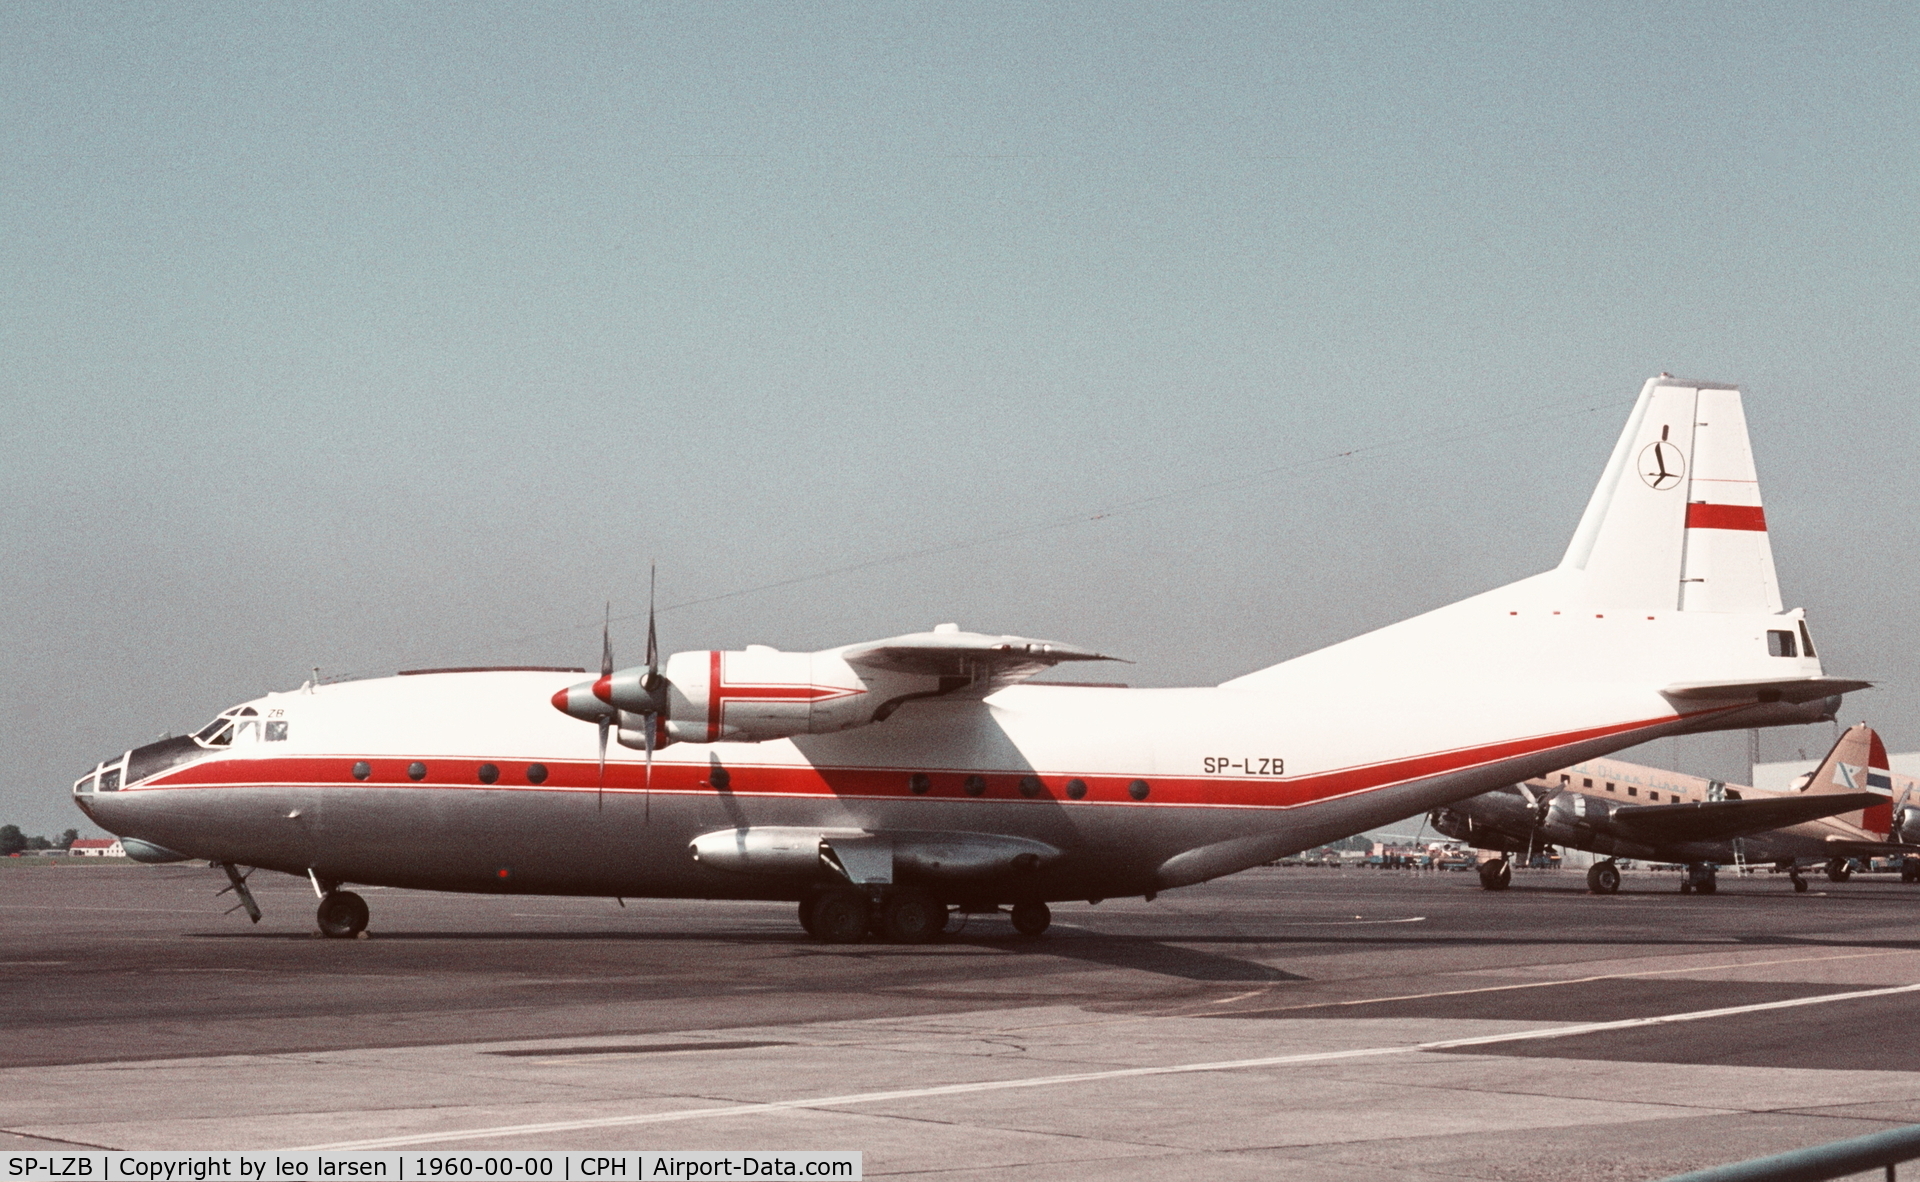 SP-LZB, 1966 Antonov An-12BP C/N 6344308, Copenhagen in the late sixties